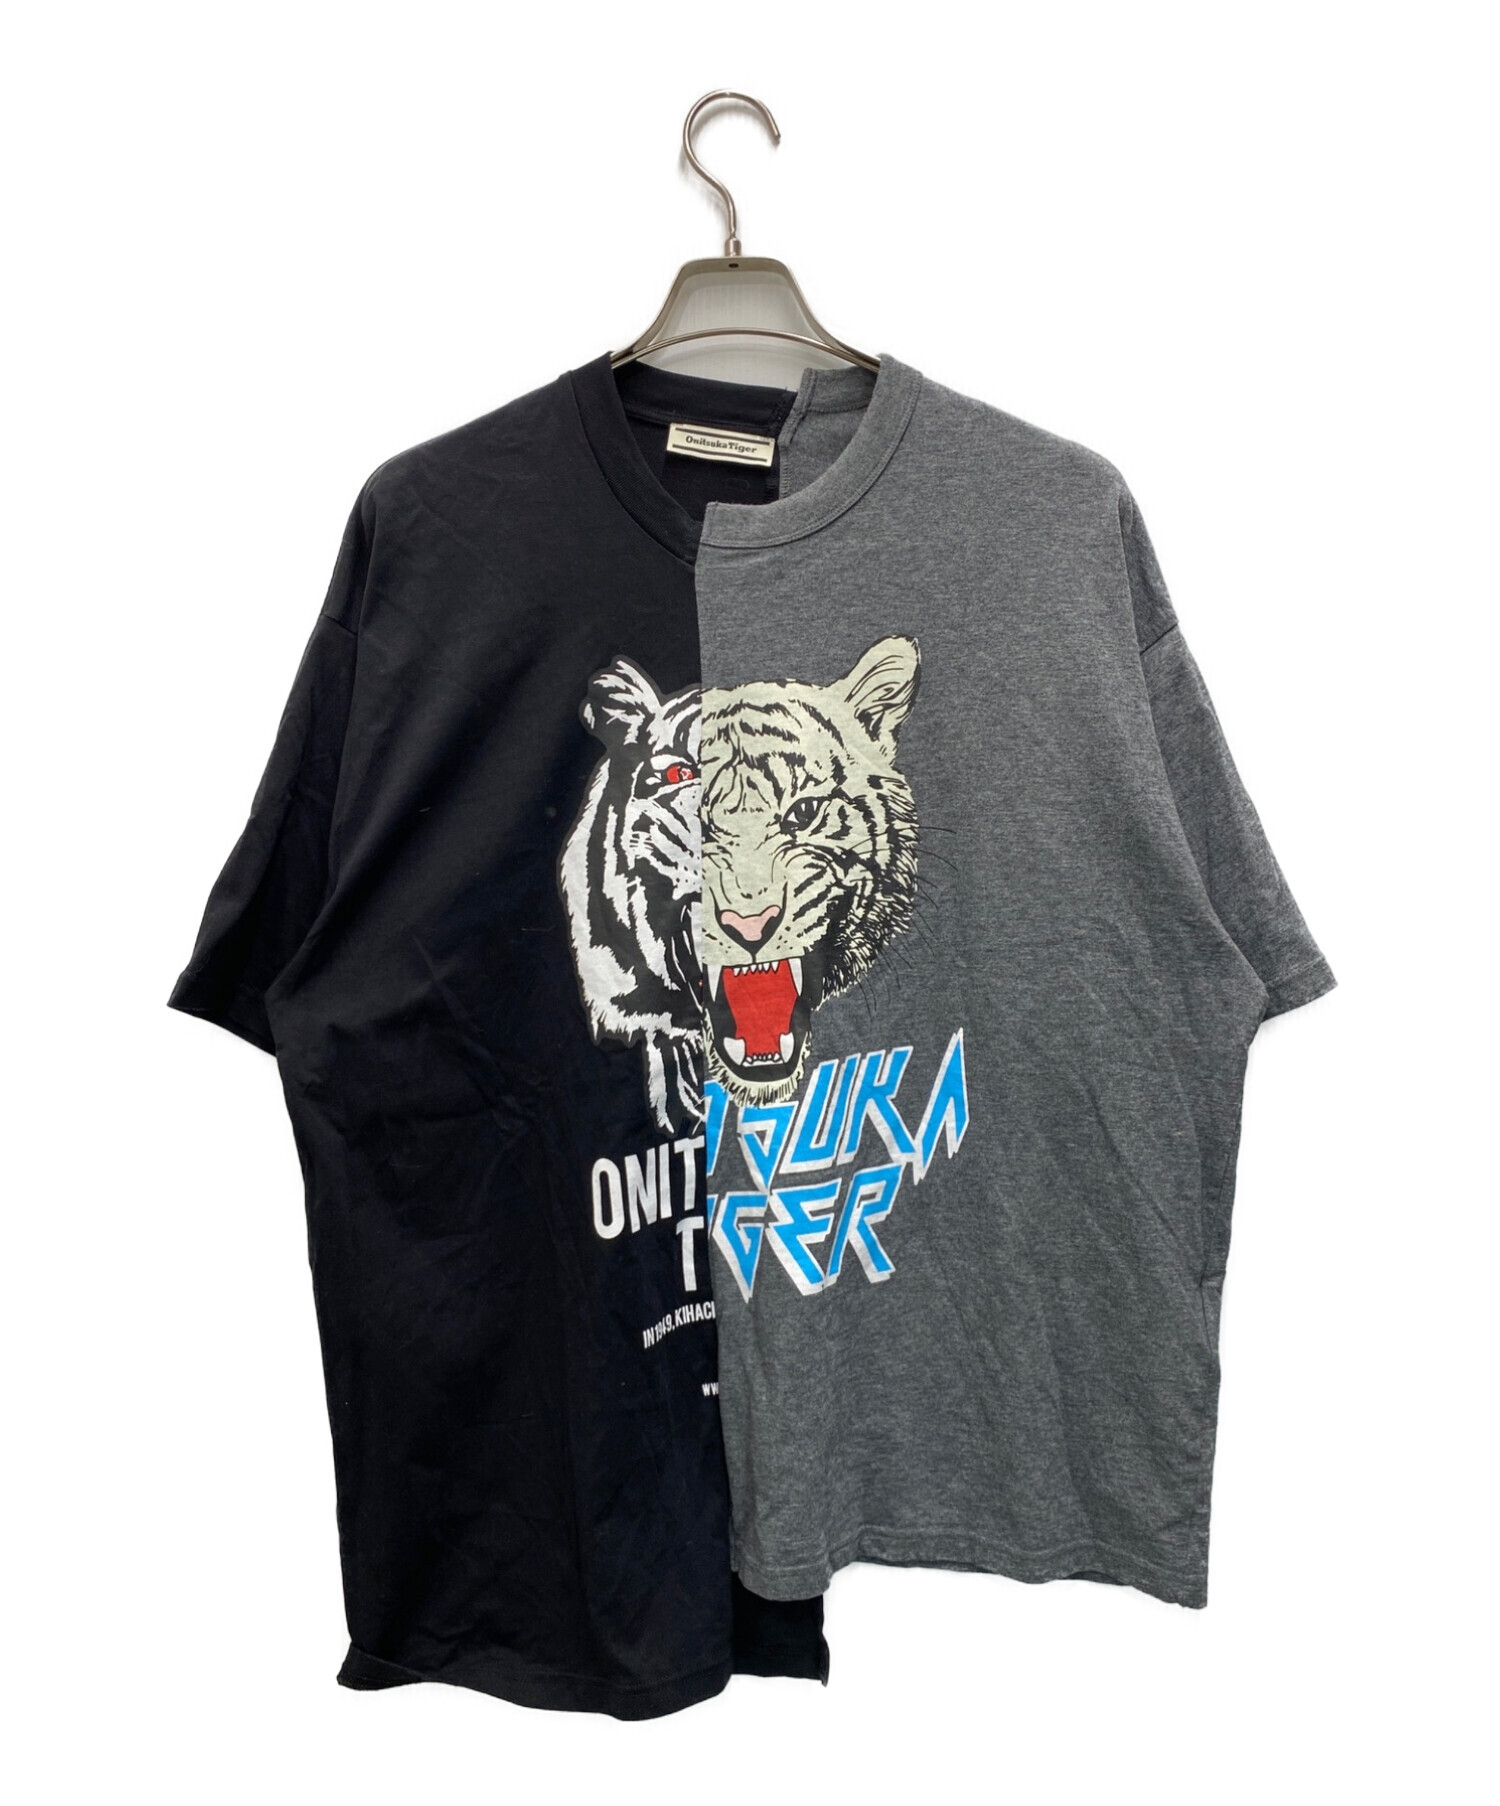 Onitsuka tiger Tシャツ - トップス